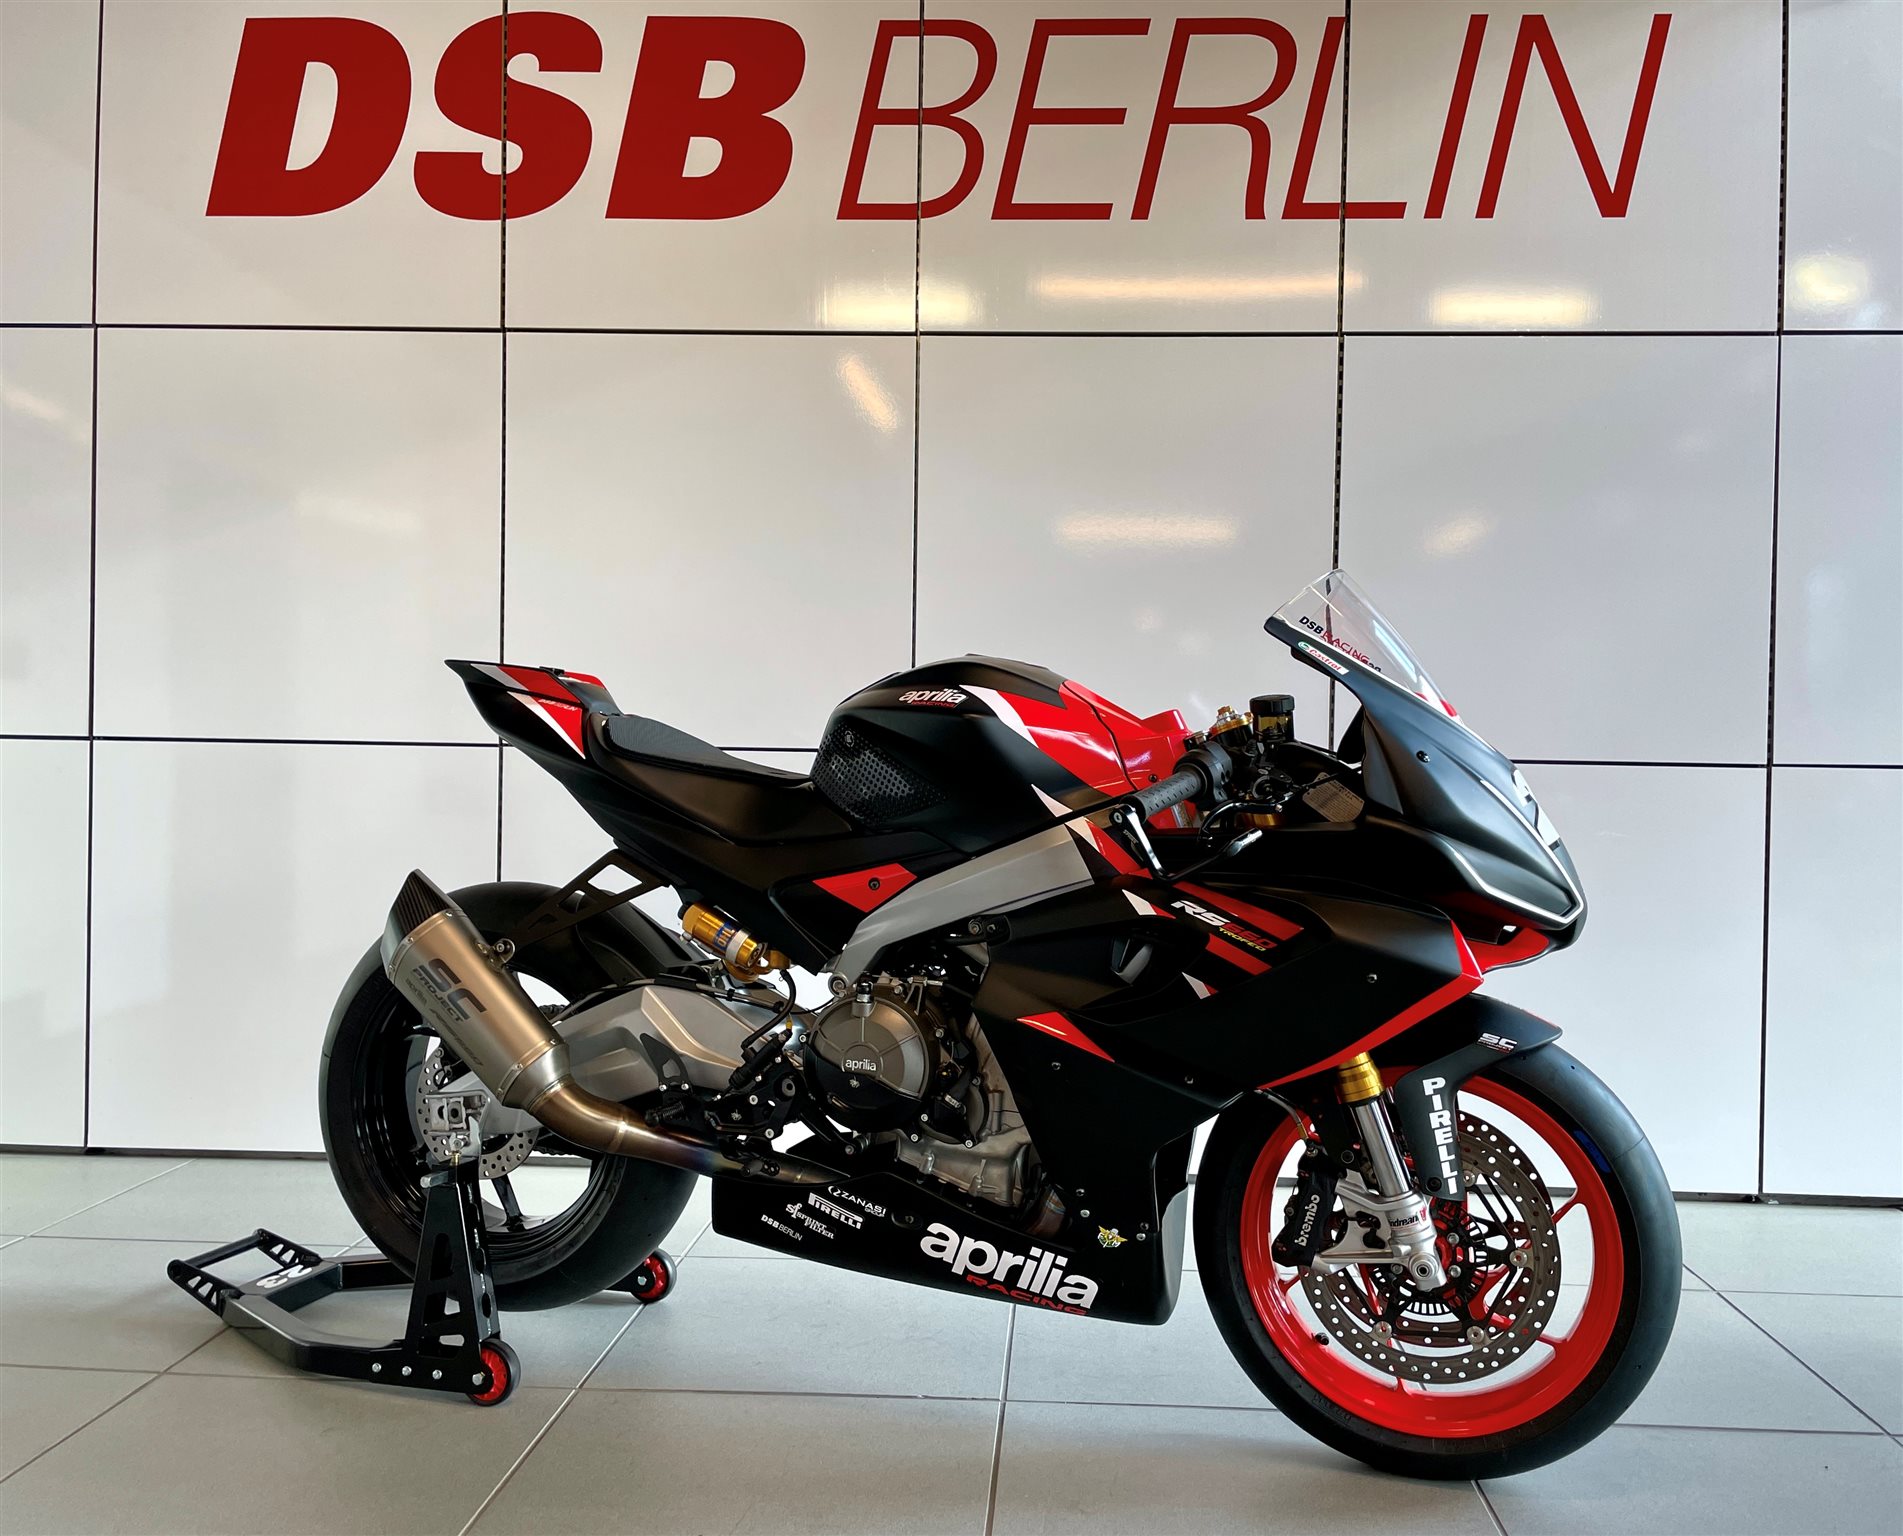 DSB Berlin – Aprilia Händler & Ducati Spezialist